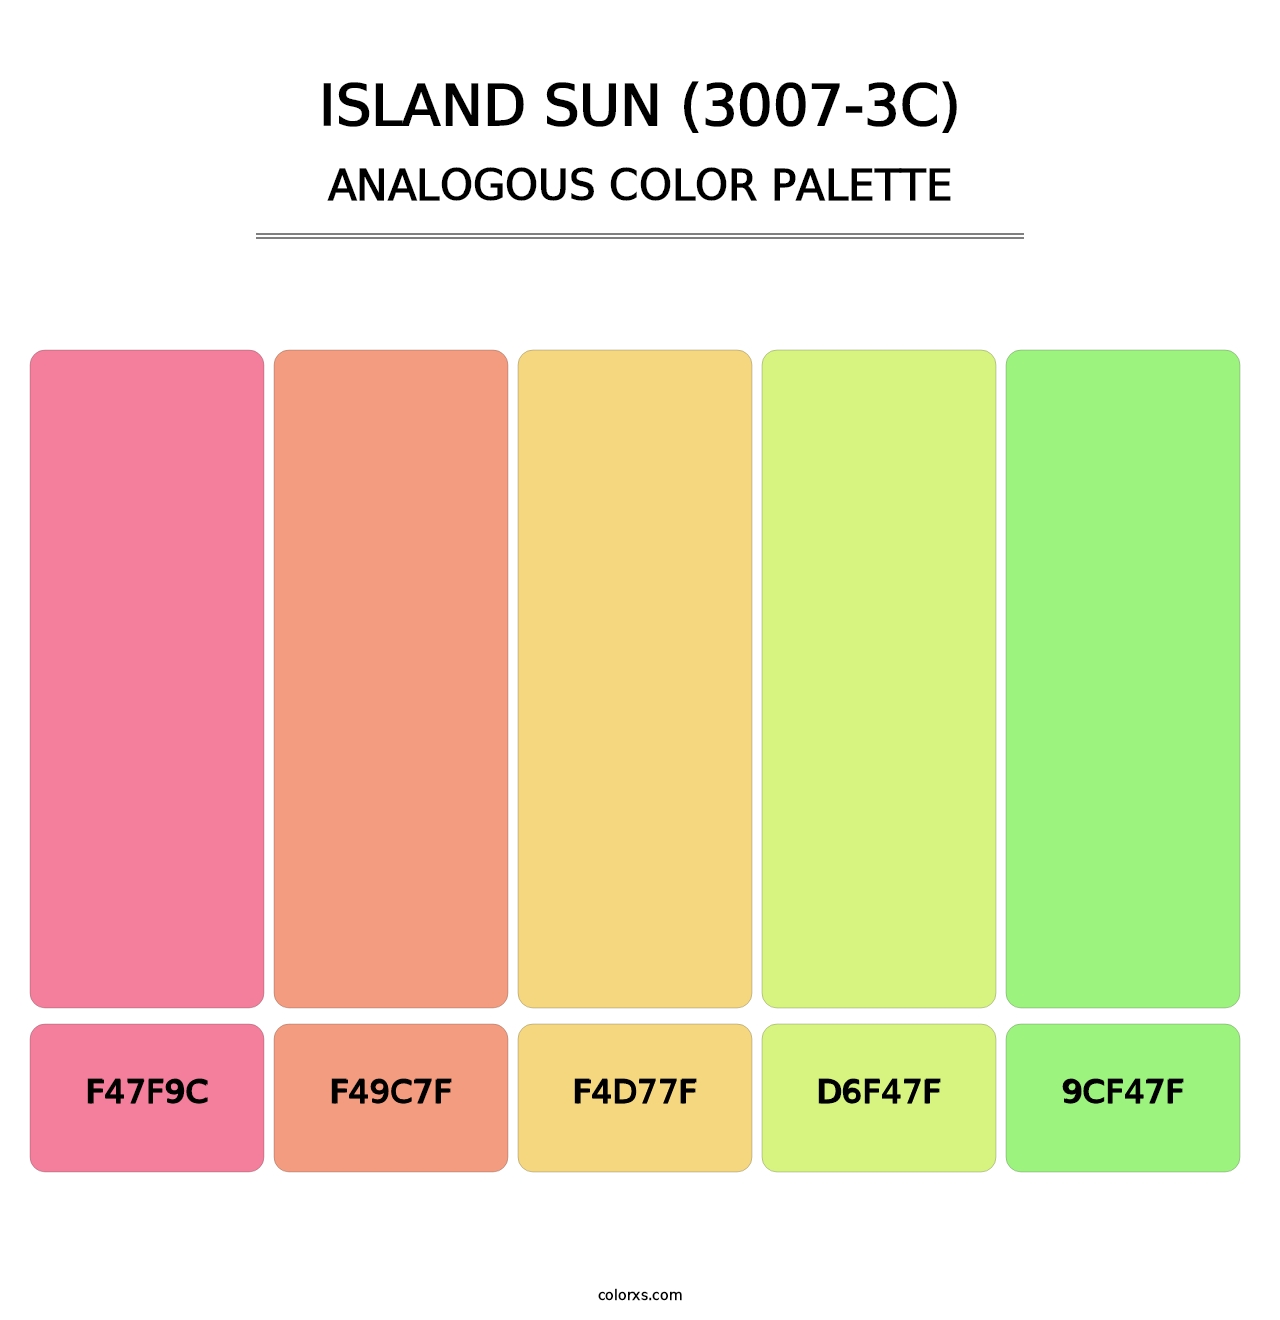 Island Sun (3007-3C) - Analogous Color Palette